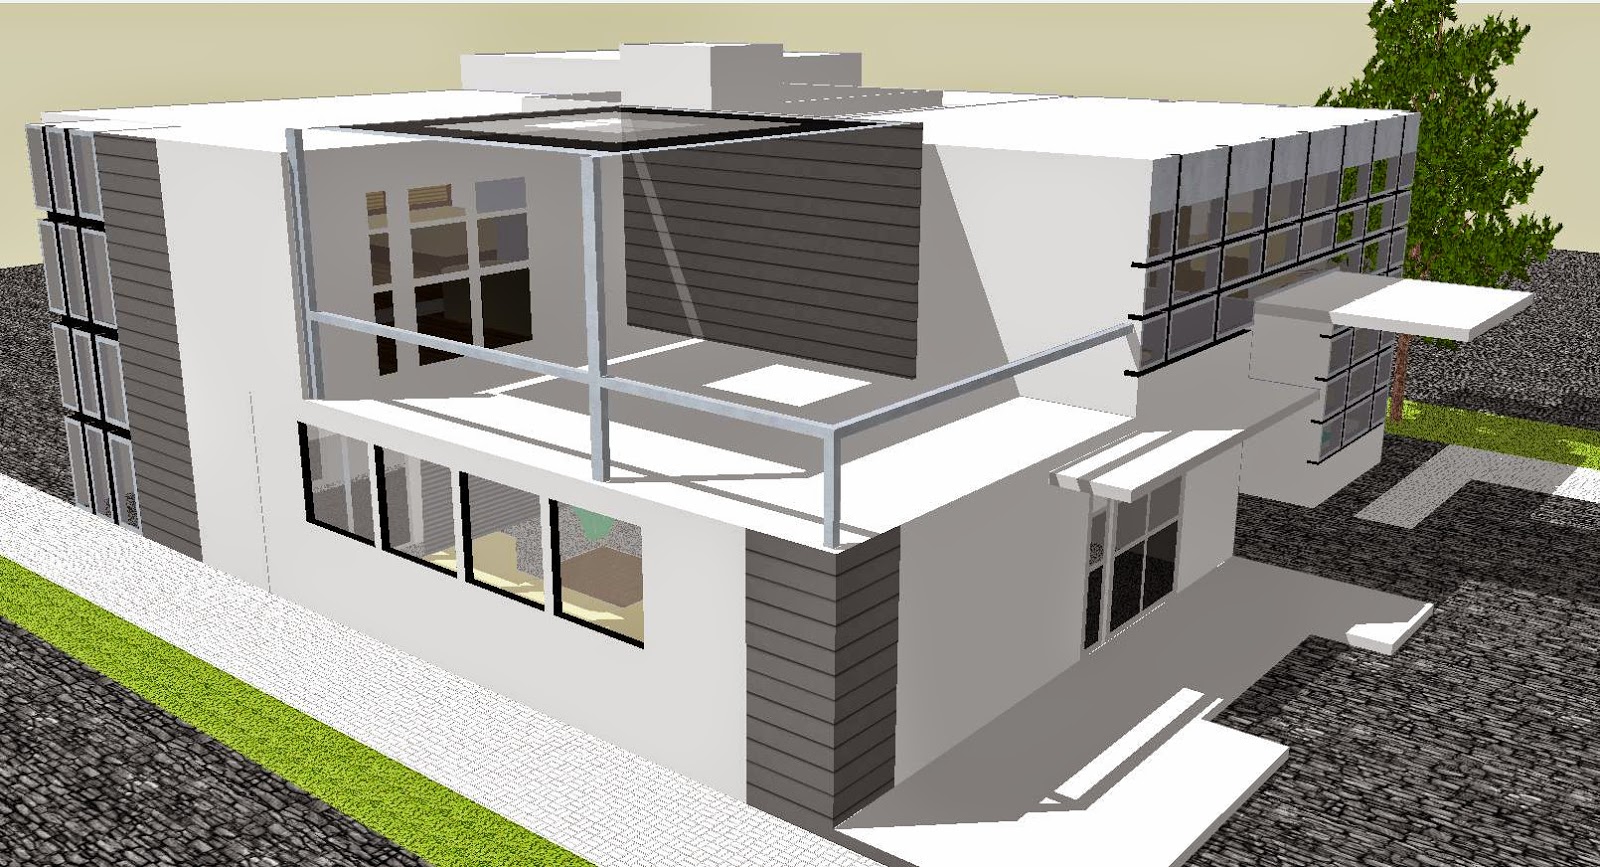 google sketchup house design